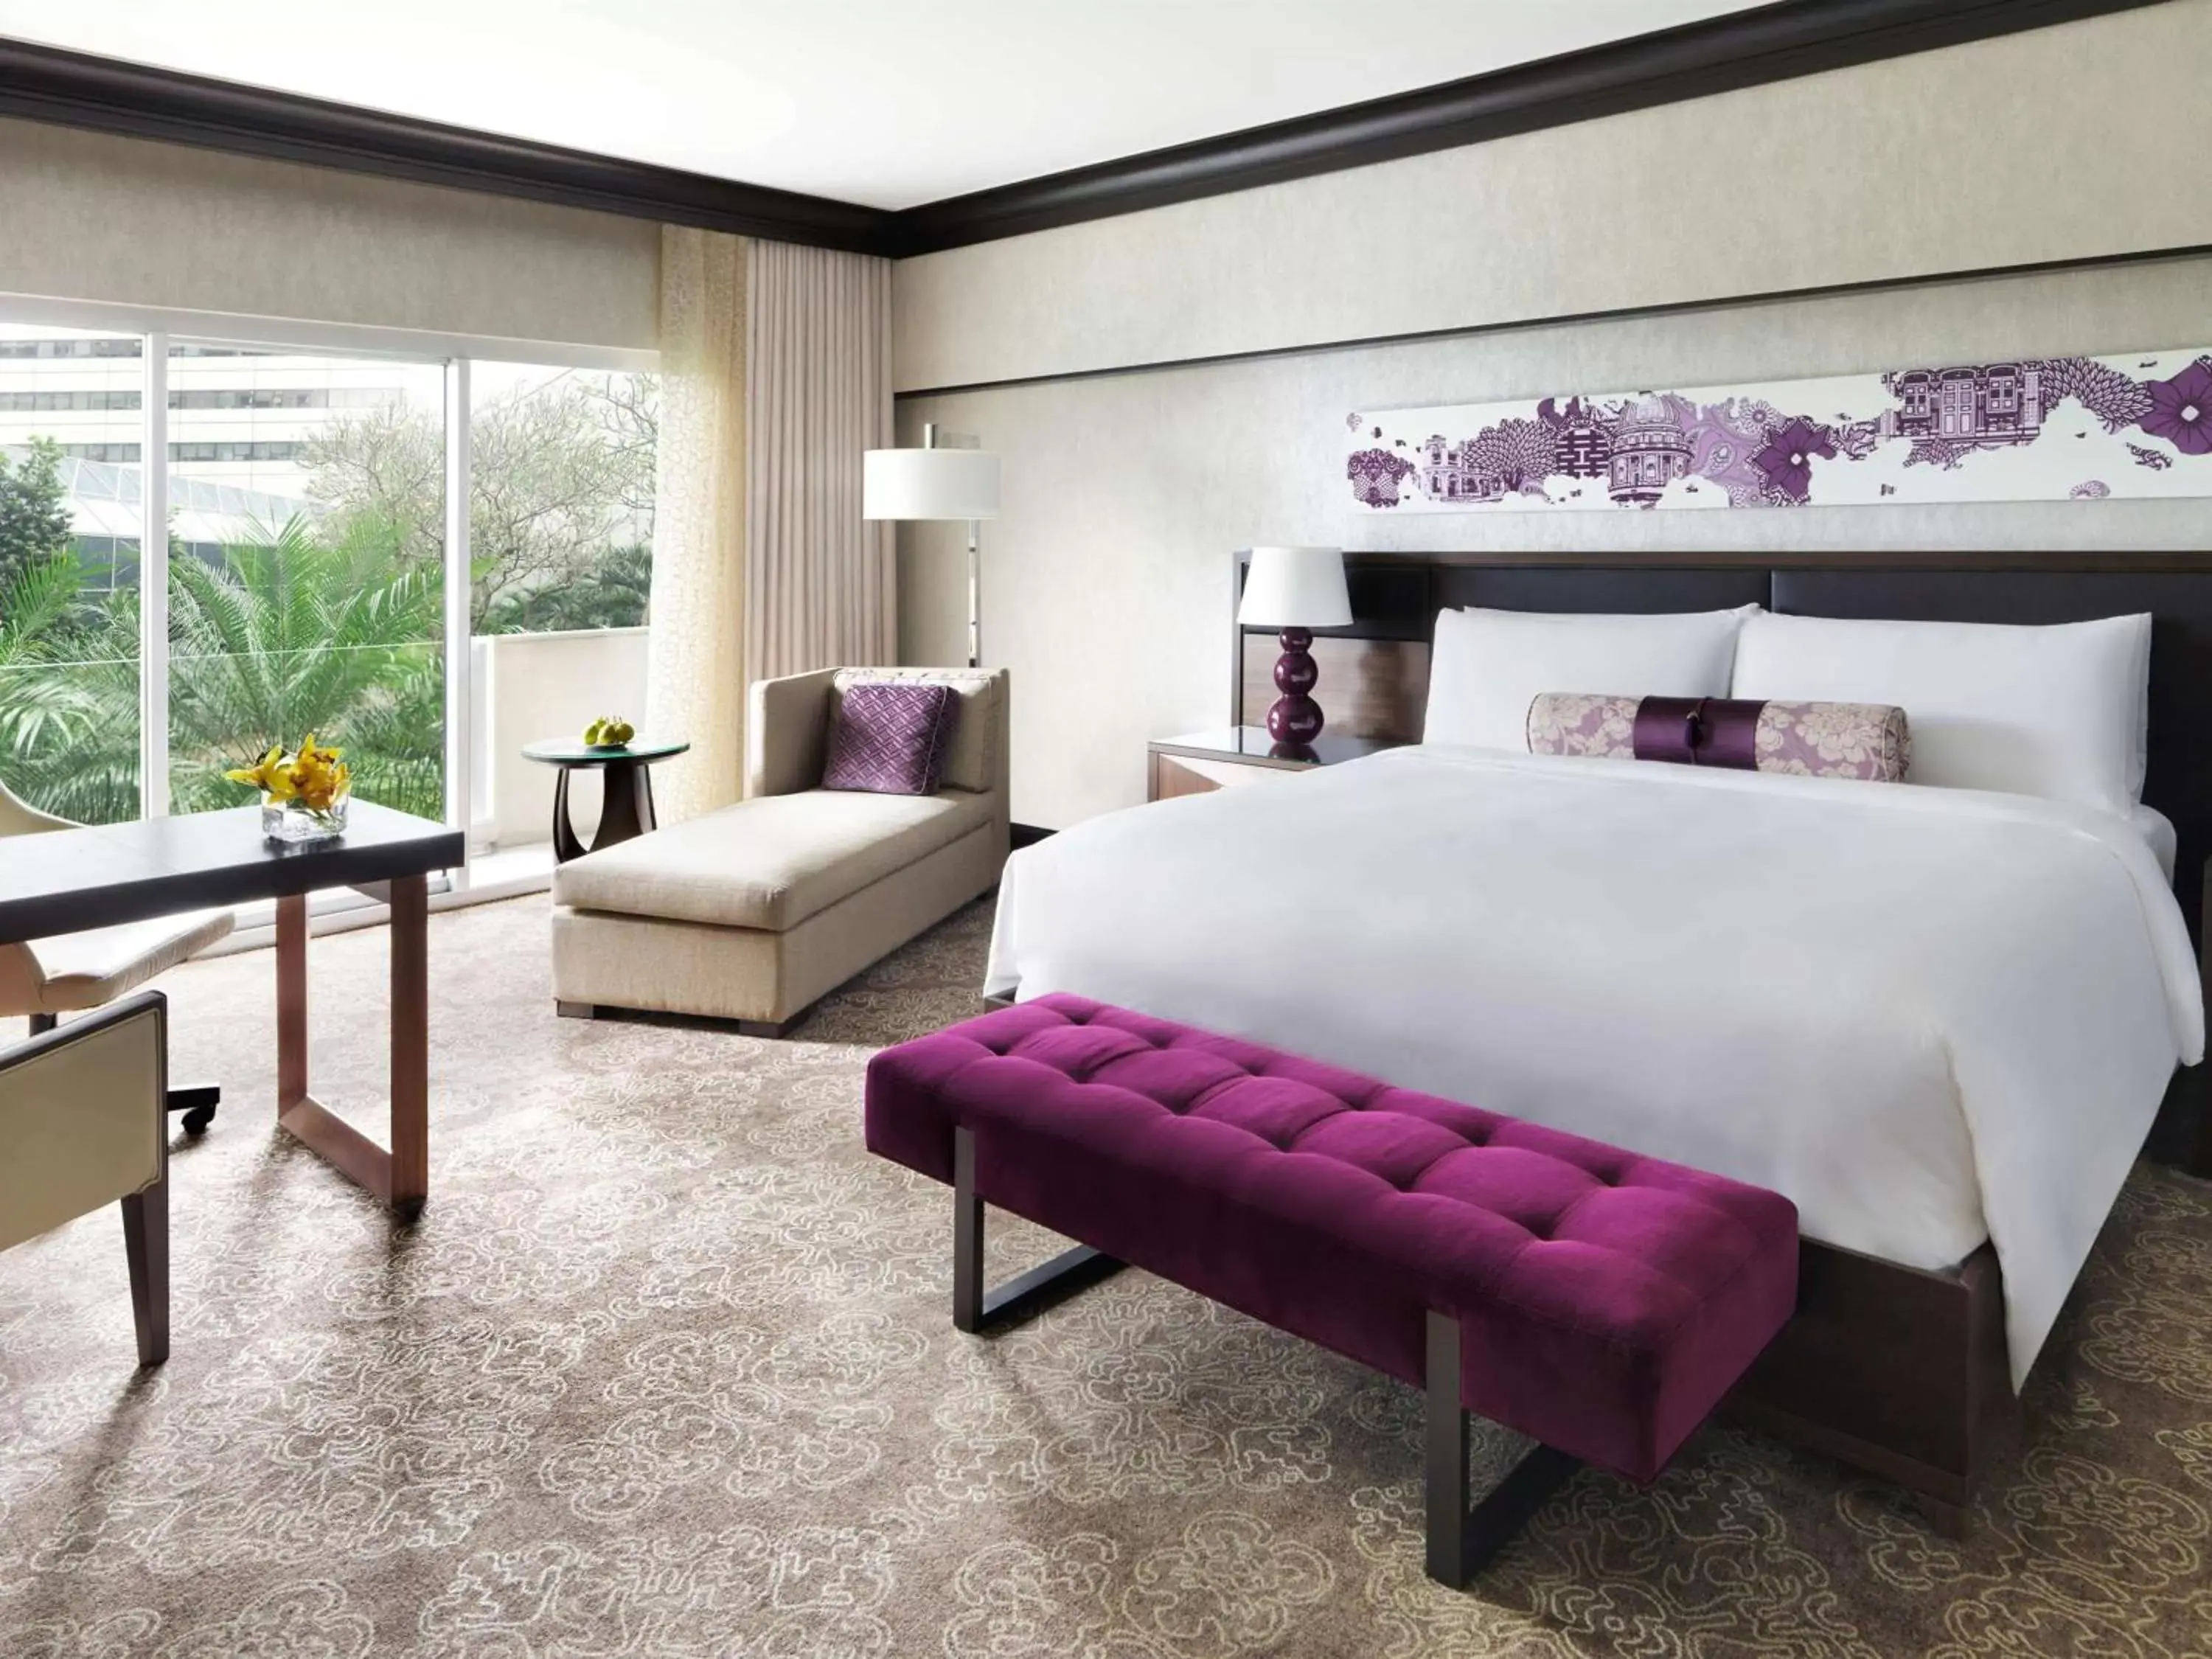 Bedroom in Fairmont Singapore